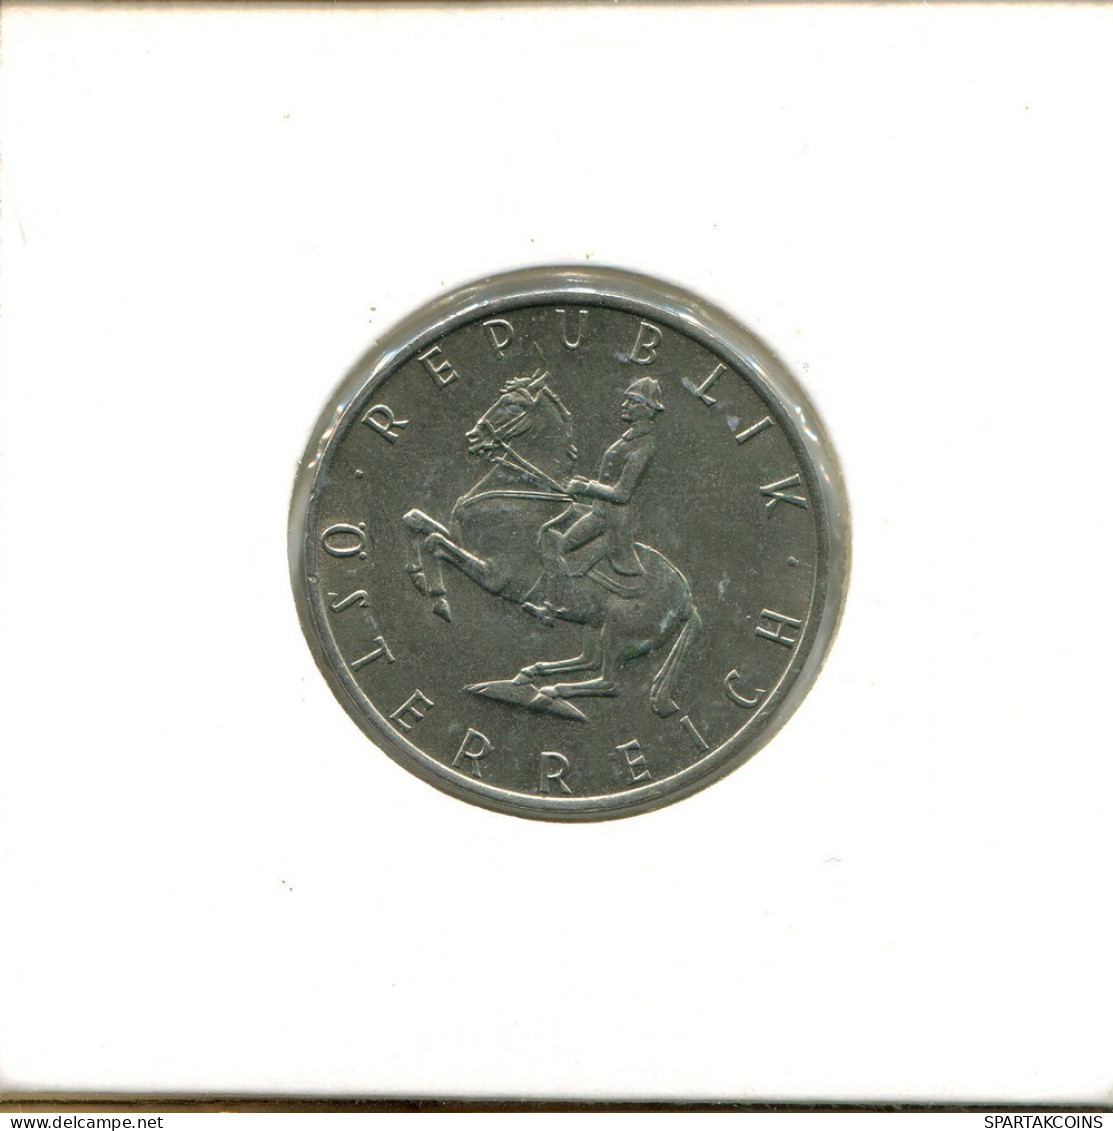 5 SCHILLING 1972 AUSTRIA Coin #AT664.U.A - Oostenrijk